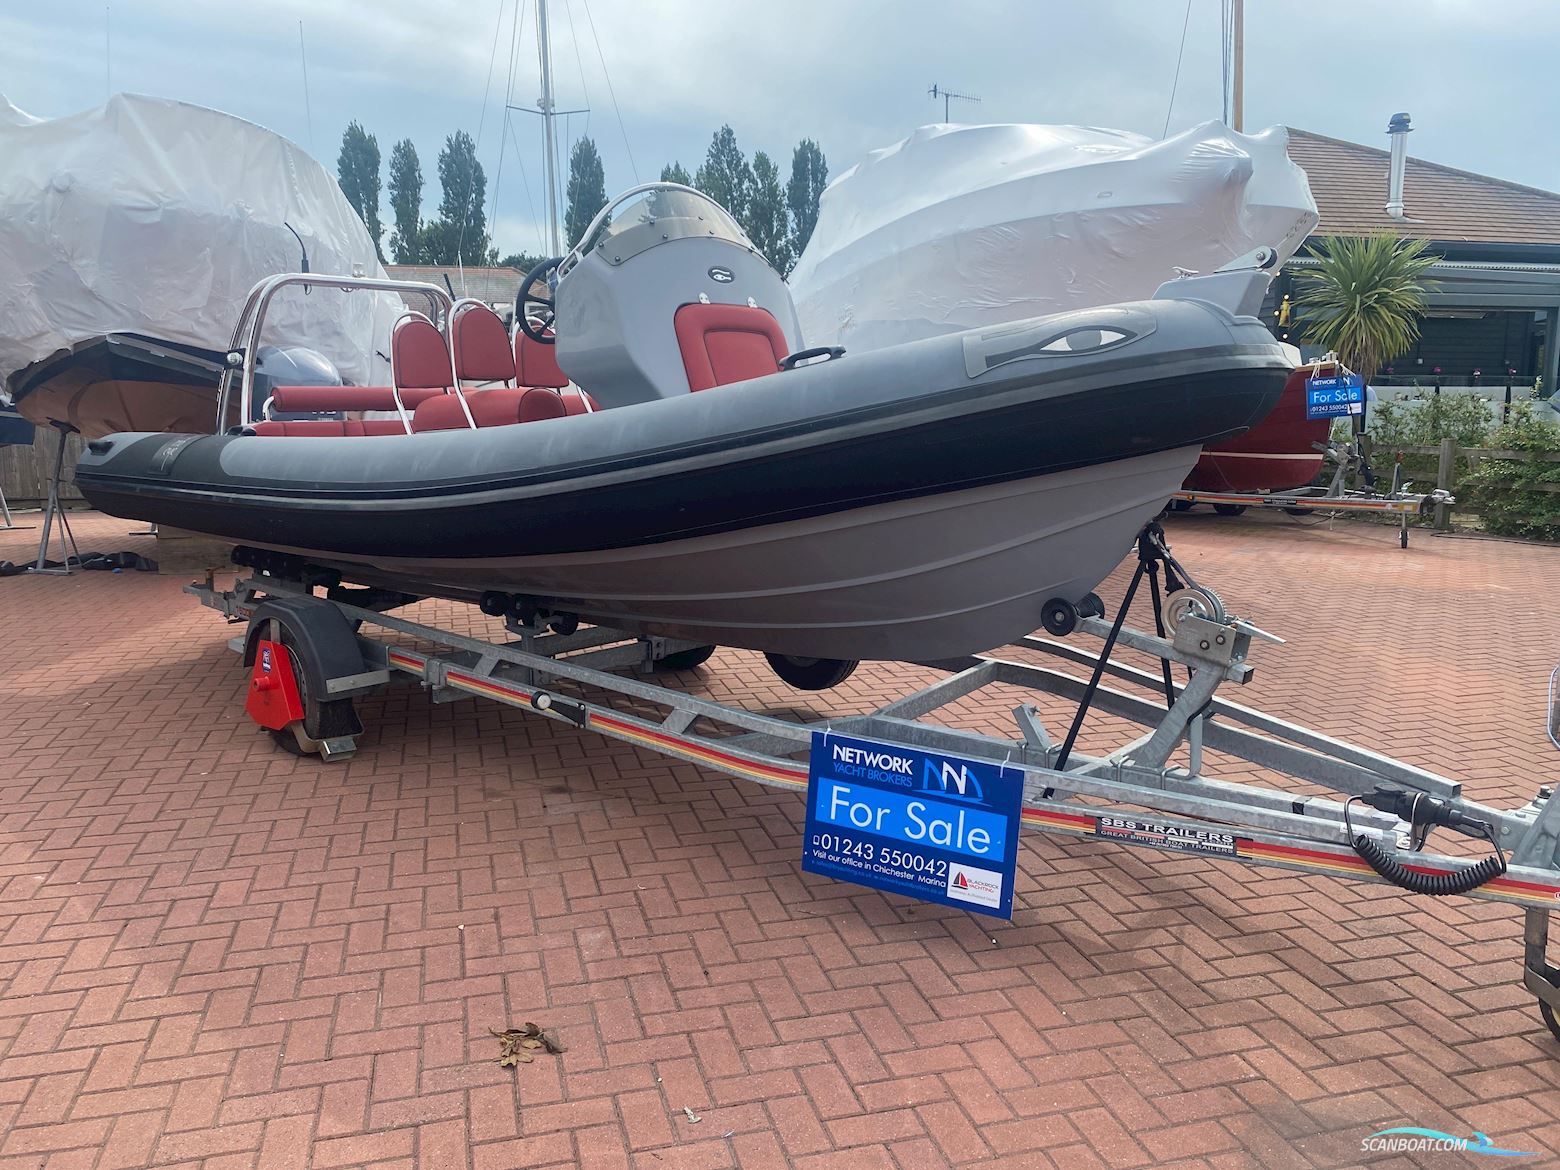 Ribeye A600 Motor boat 2016, with Yamaha engine, United Kingdom